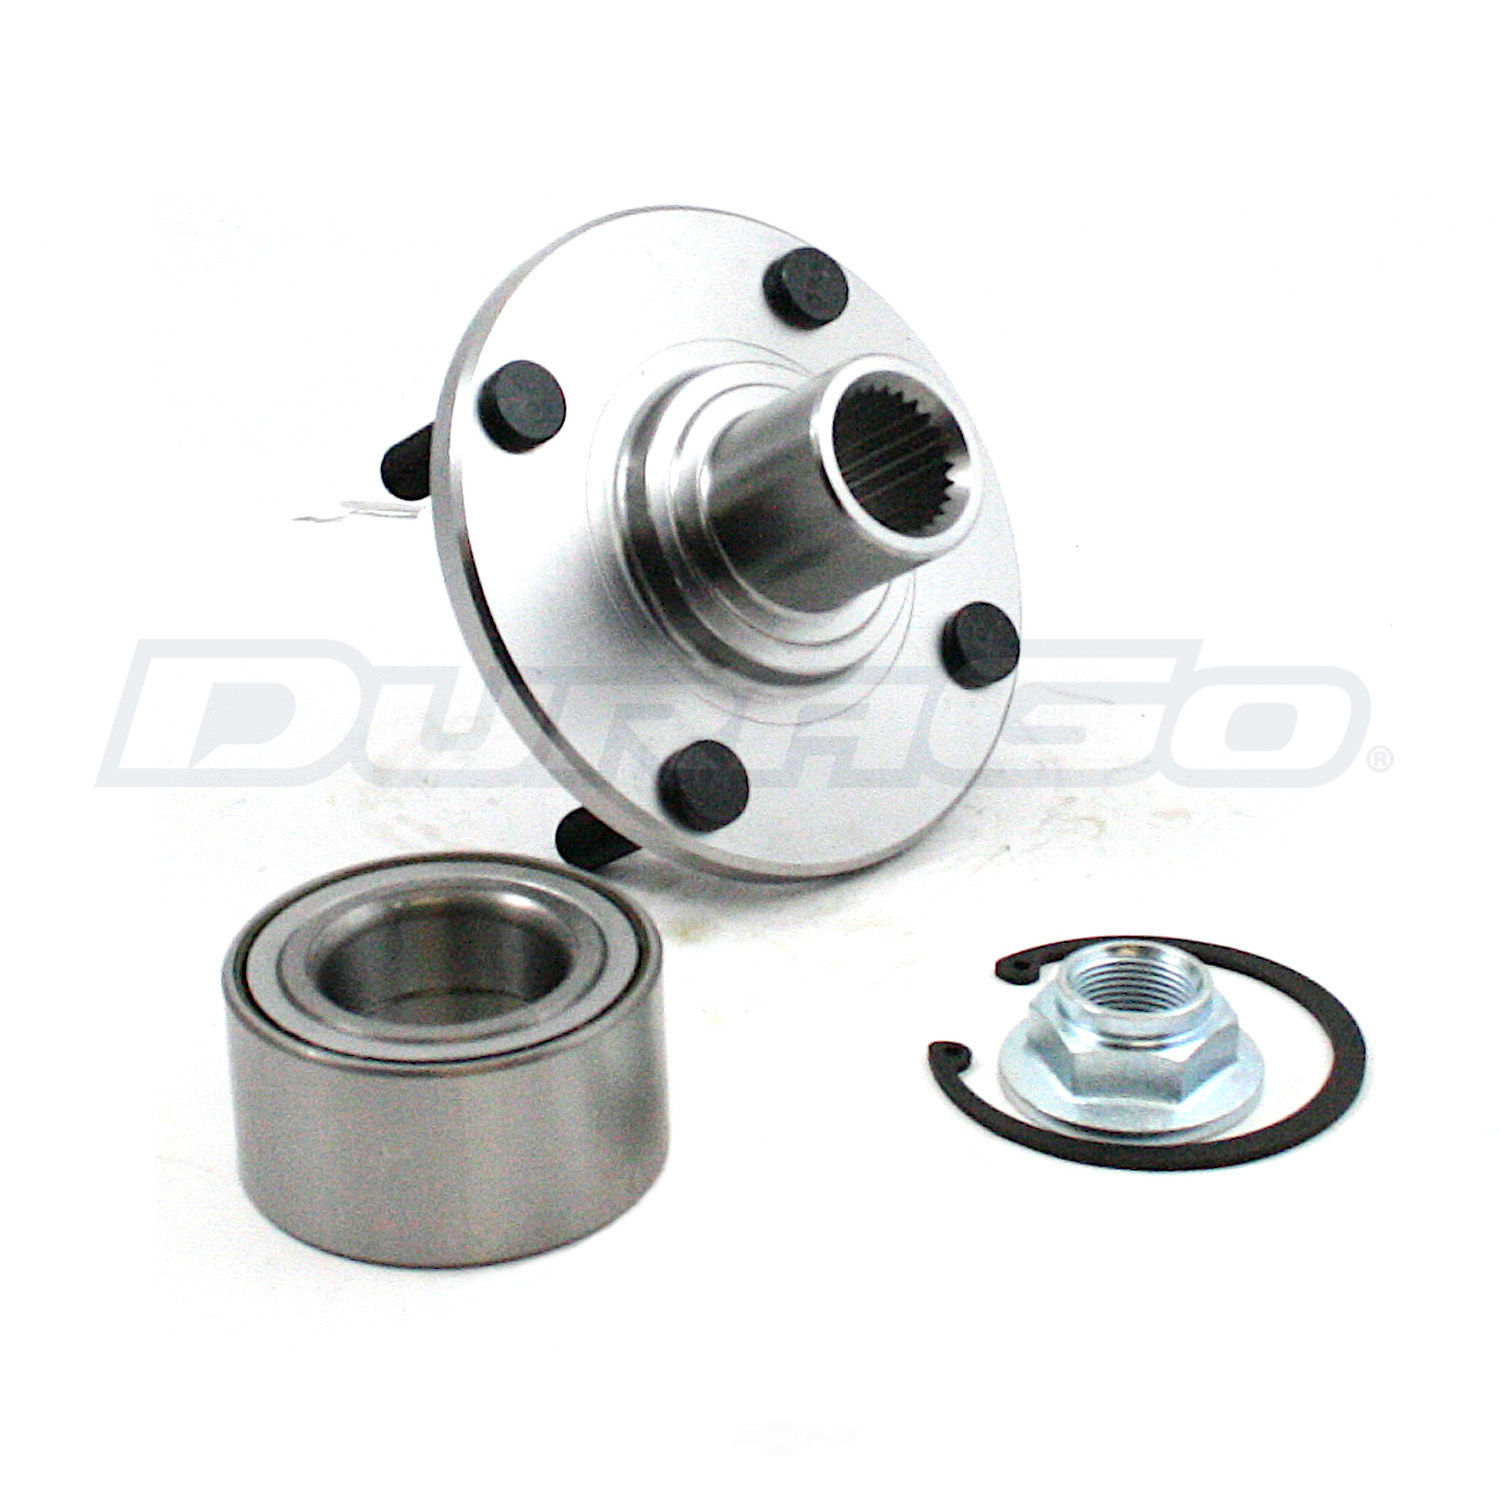 DURAGO - Wheel Hub Repair Kit - D48 295-18510